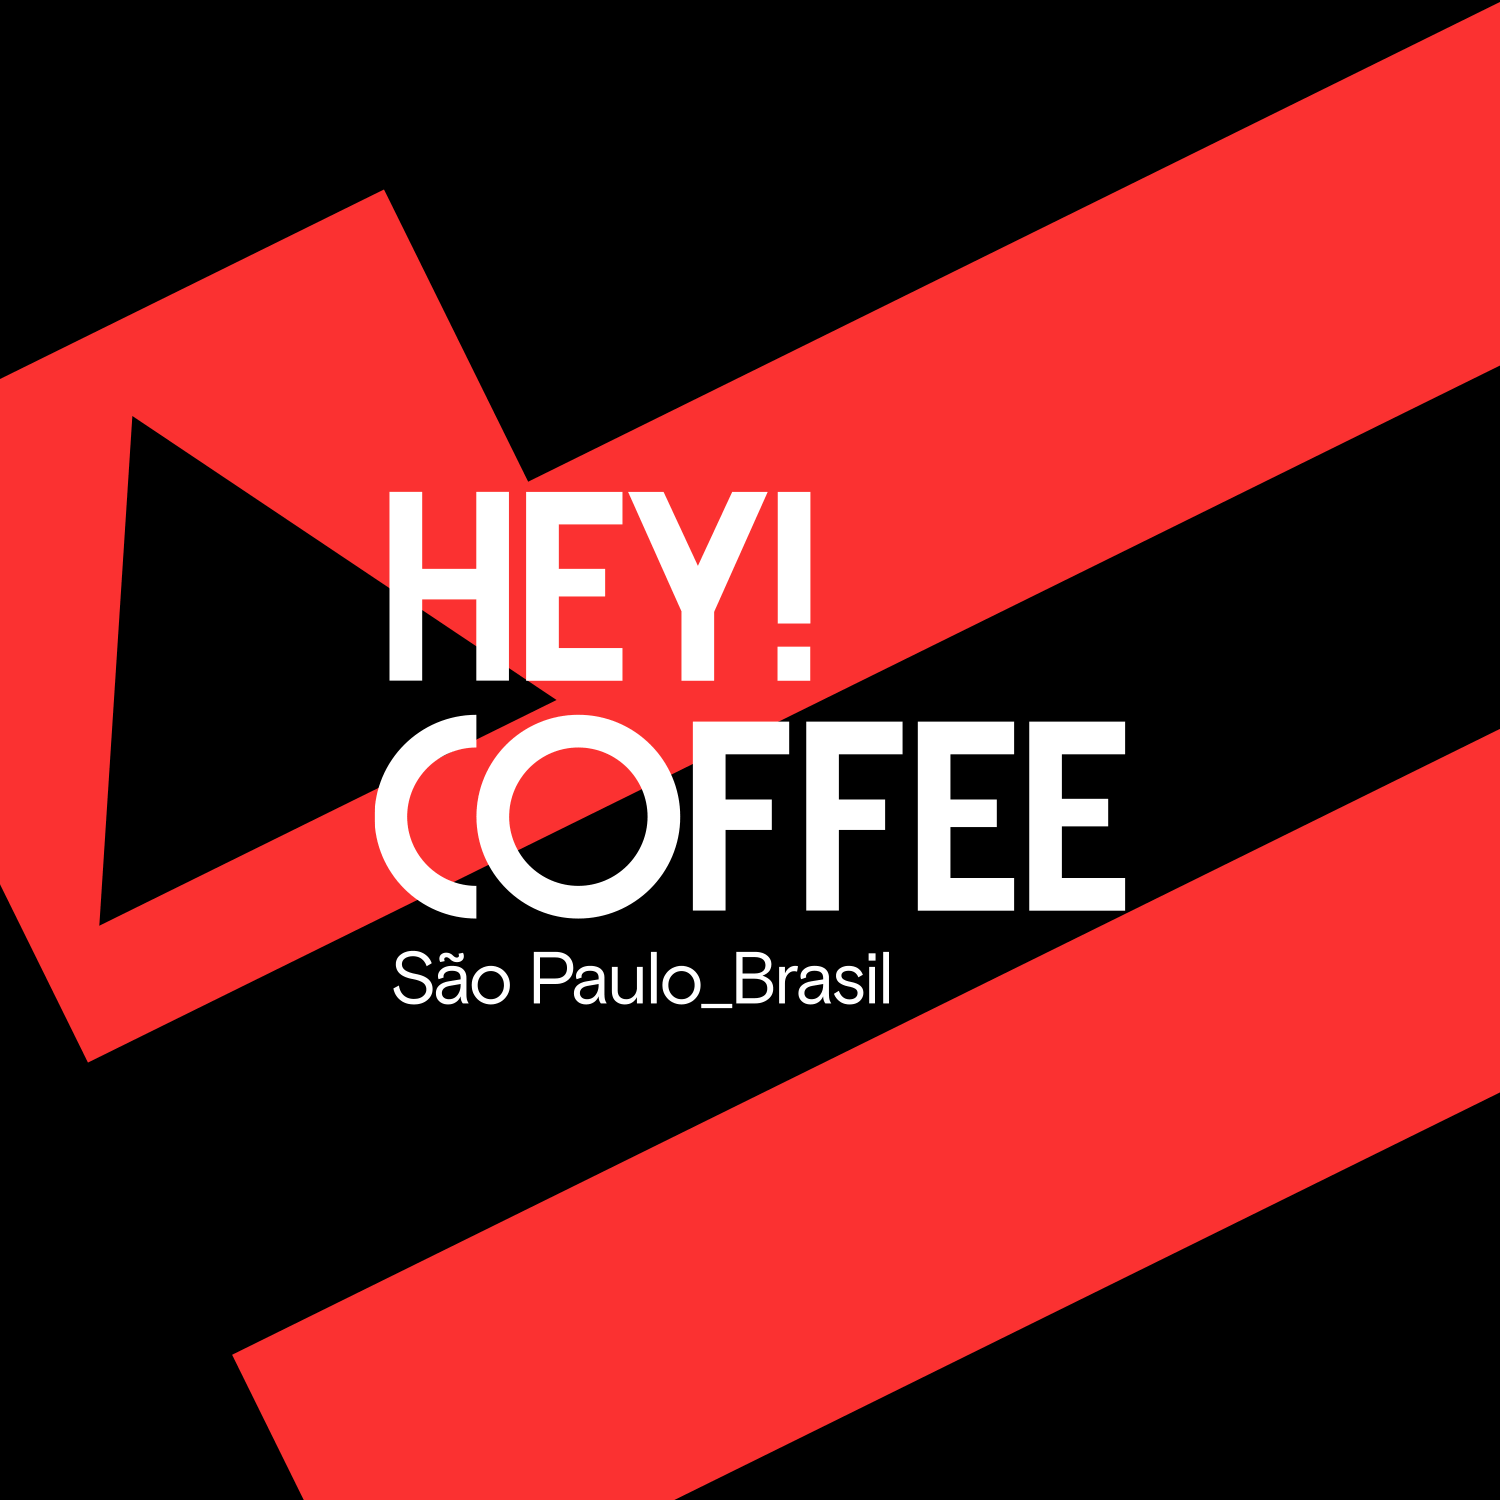 Hey! Coffee